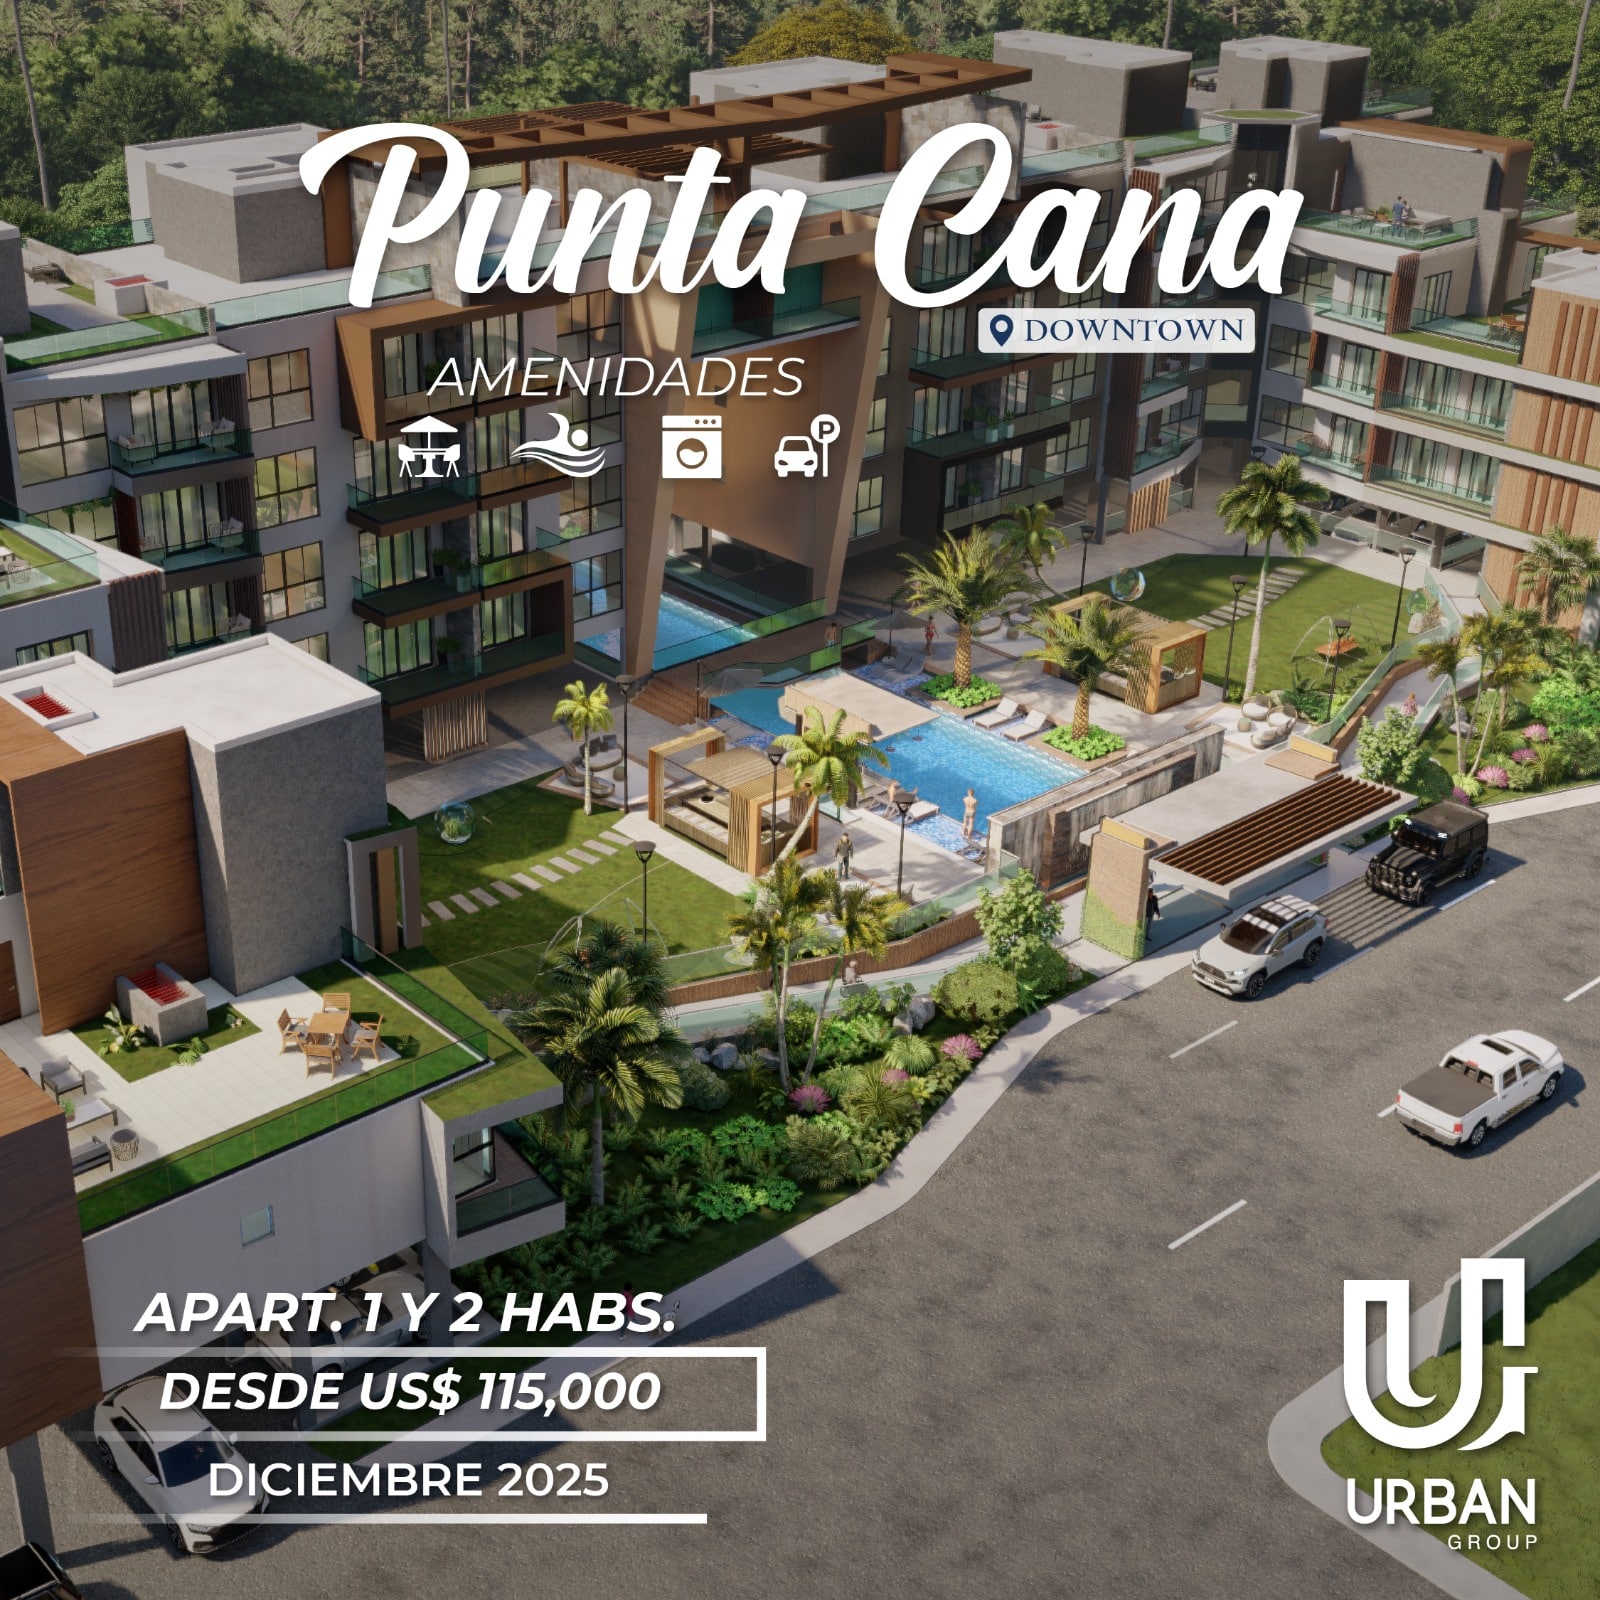 Apartamentos en el mismo Downtown Punta Cana desde US$115,000